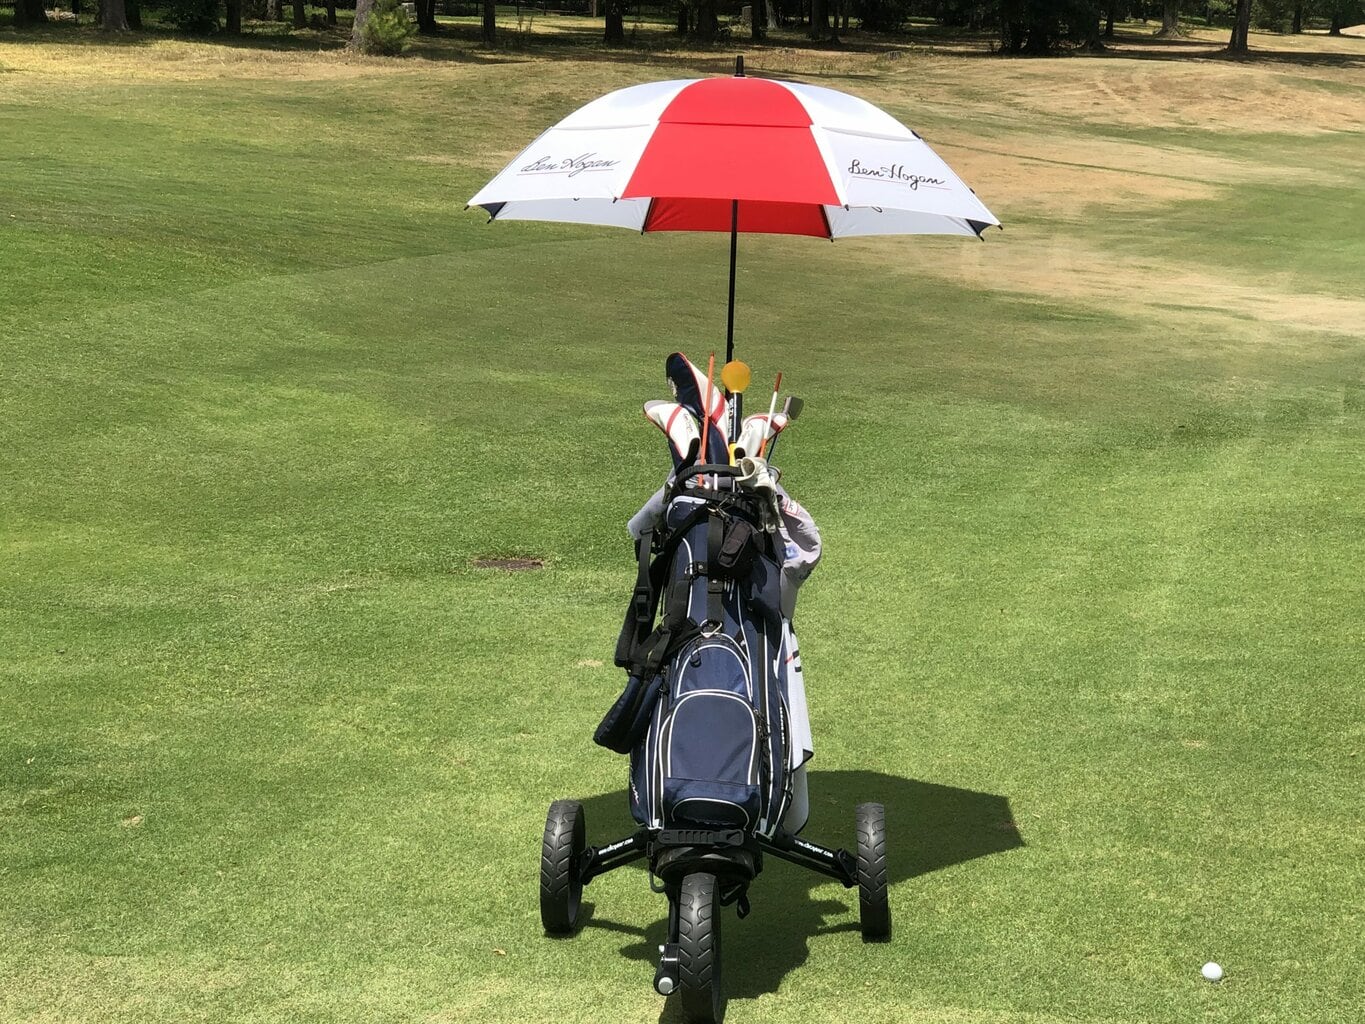 Clicgear Model 4 golf push cart & Ben Hogan Bag & Umbrella